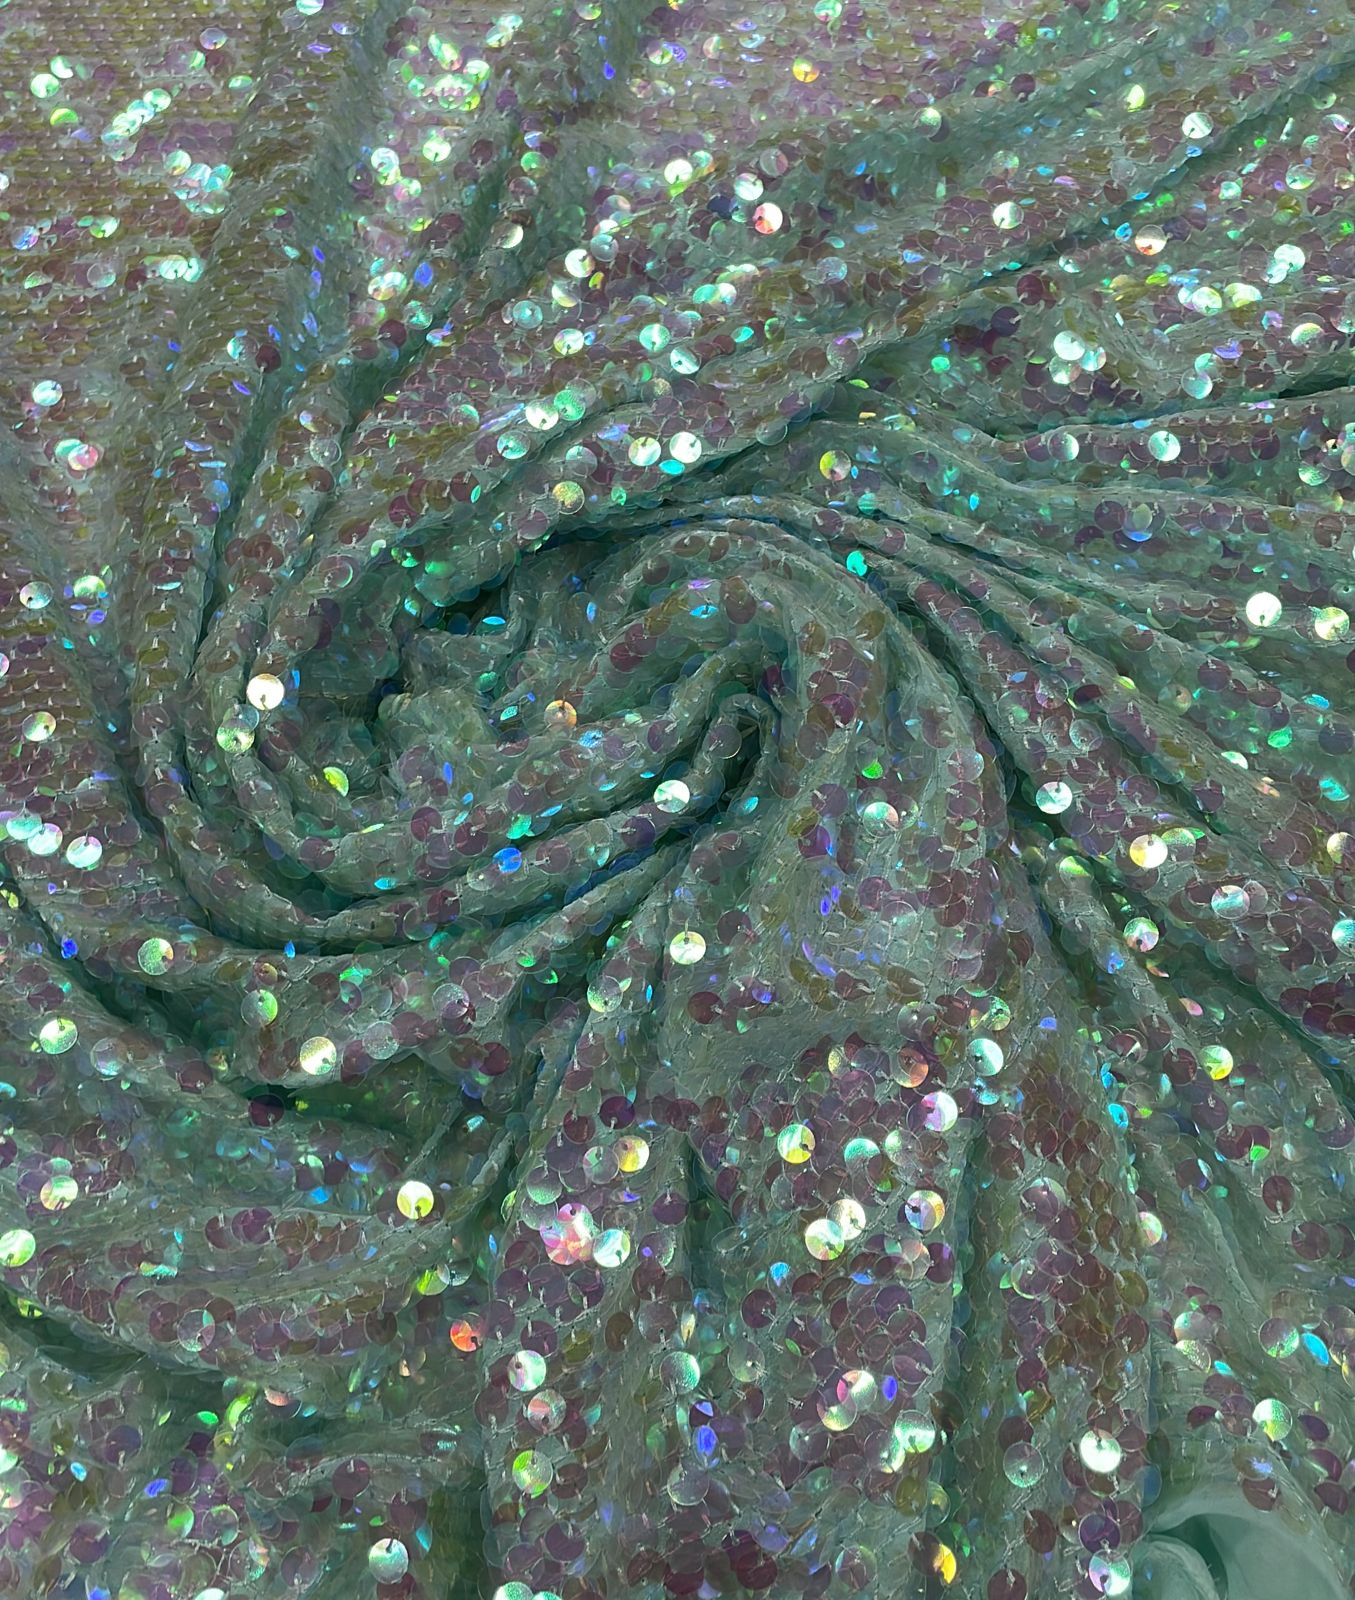 Mousseline Toque de Seda Tiffany com Paetê Holográfico